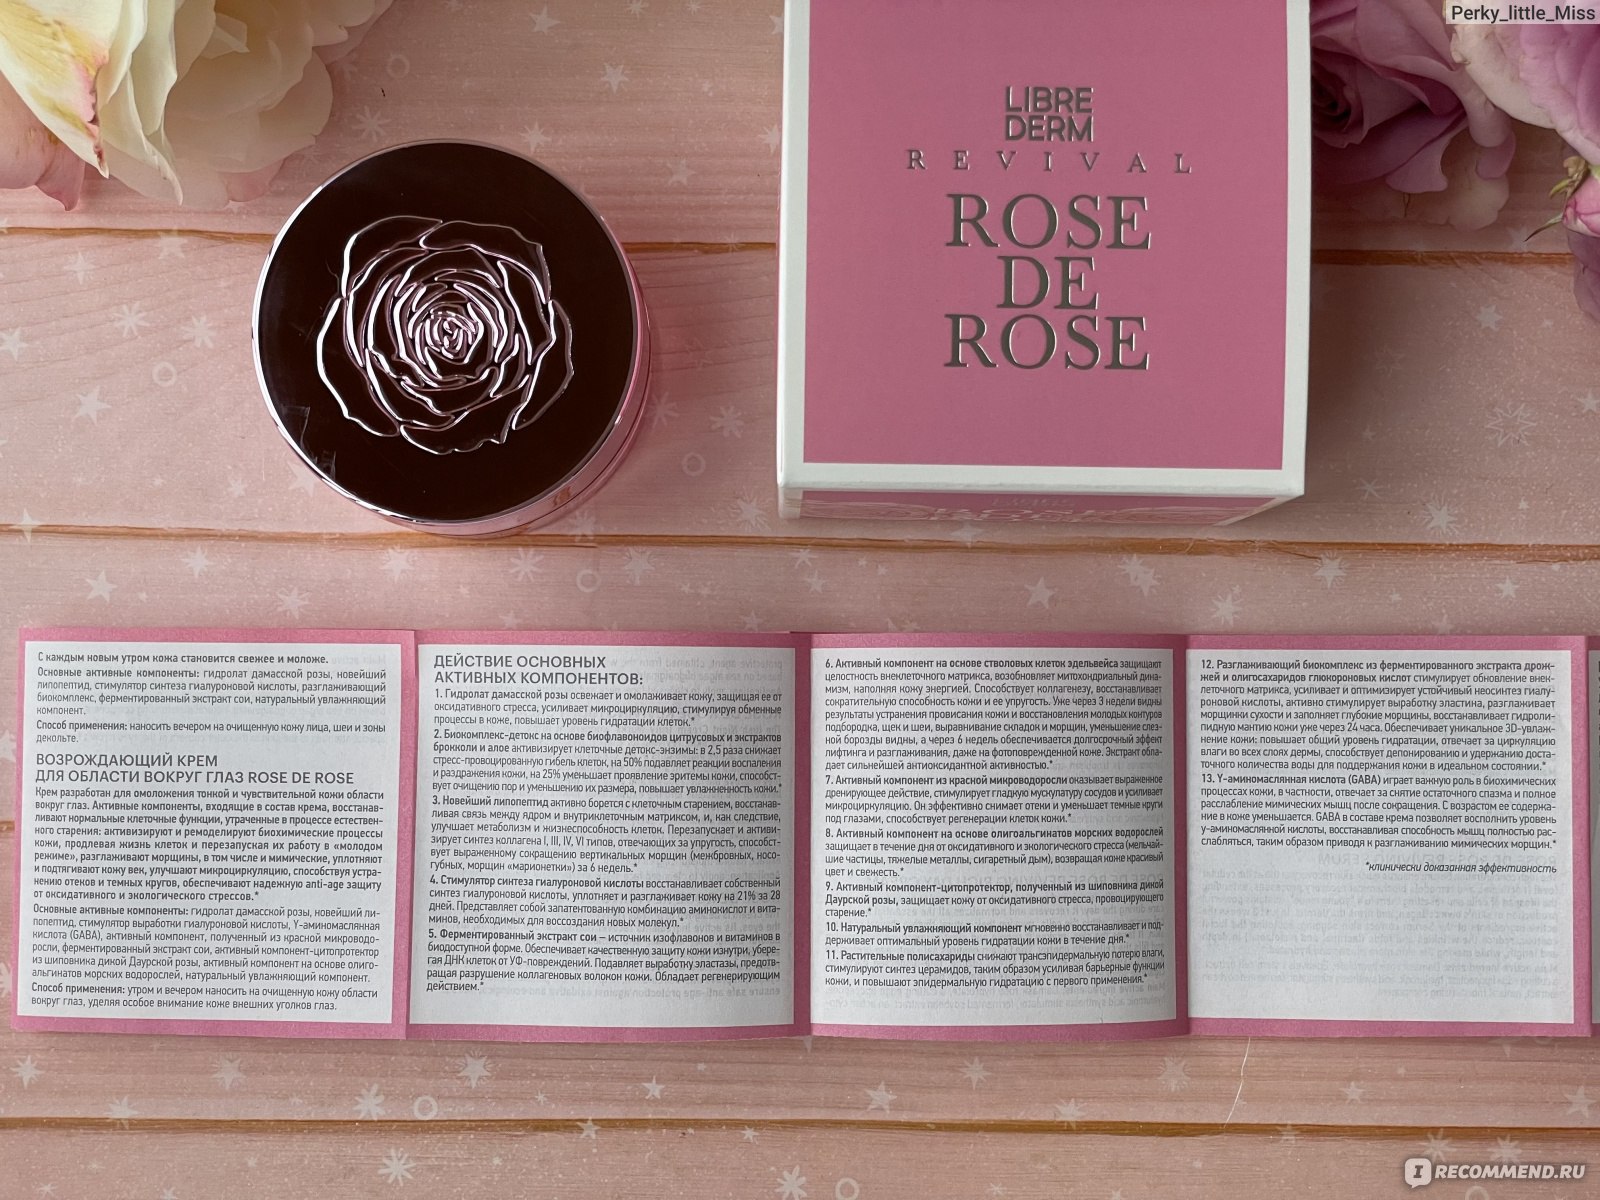 Крем для области вокруг глаз Librederm Rose de rose возрождающий - отзыв